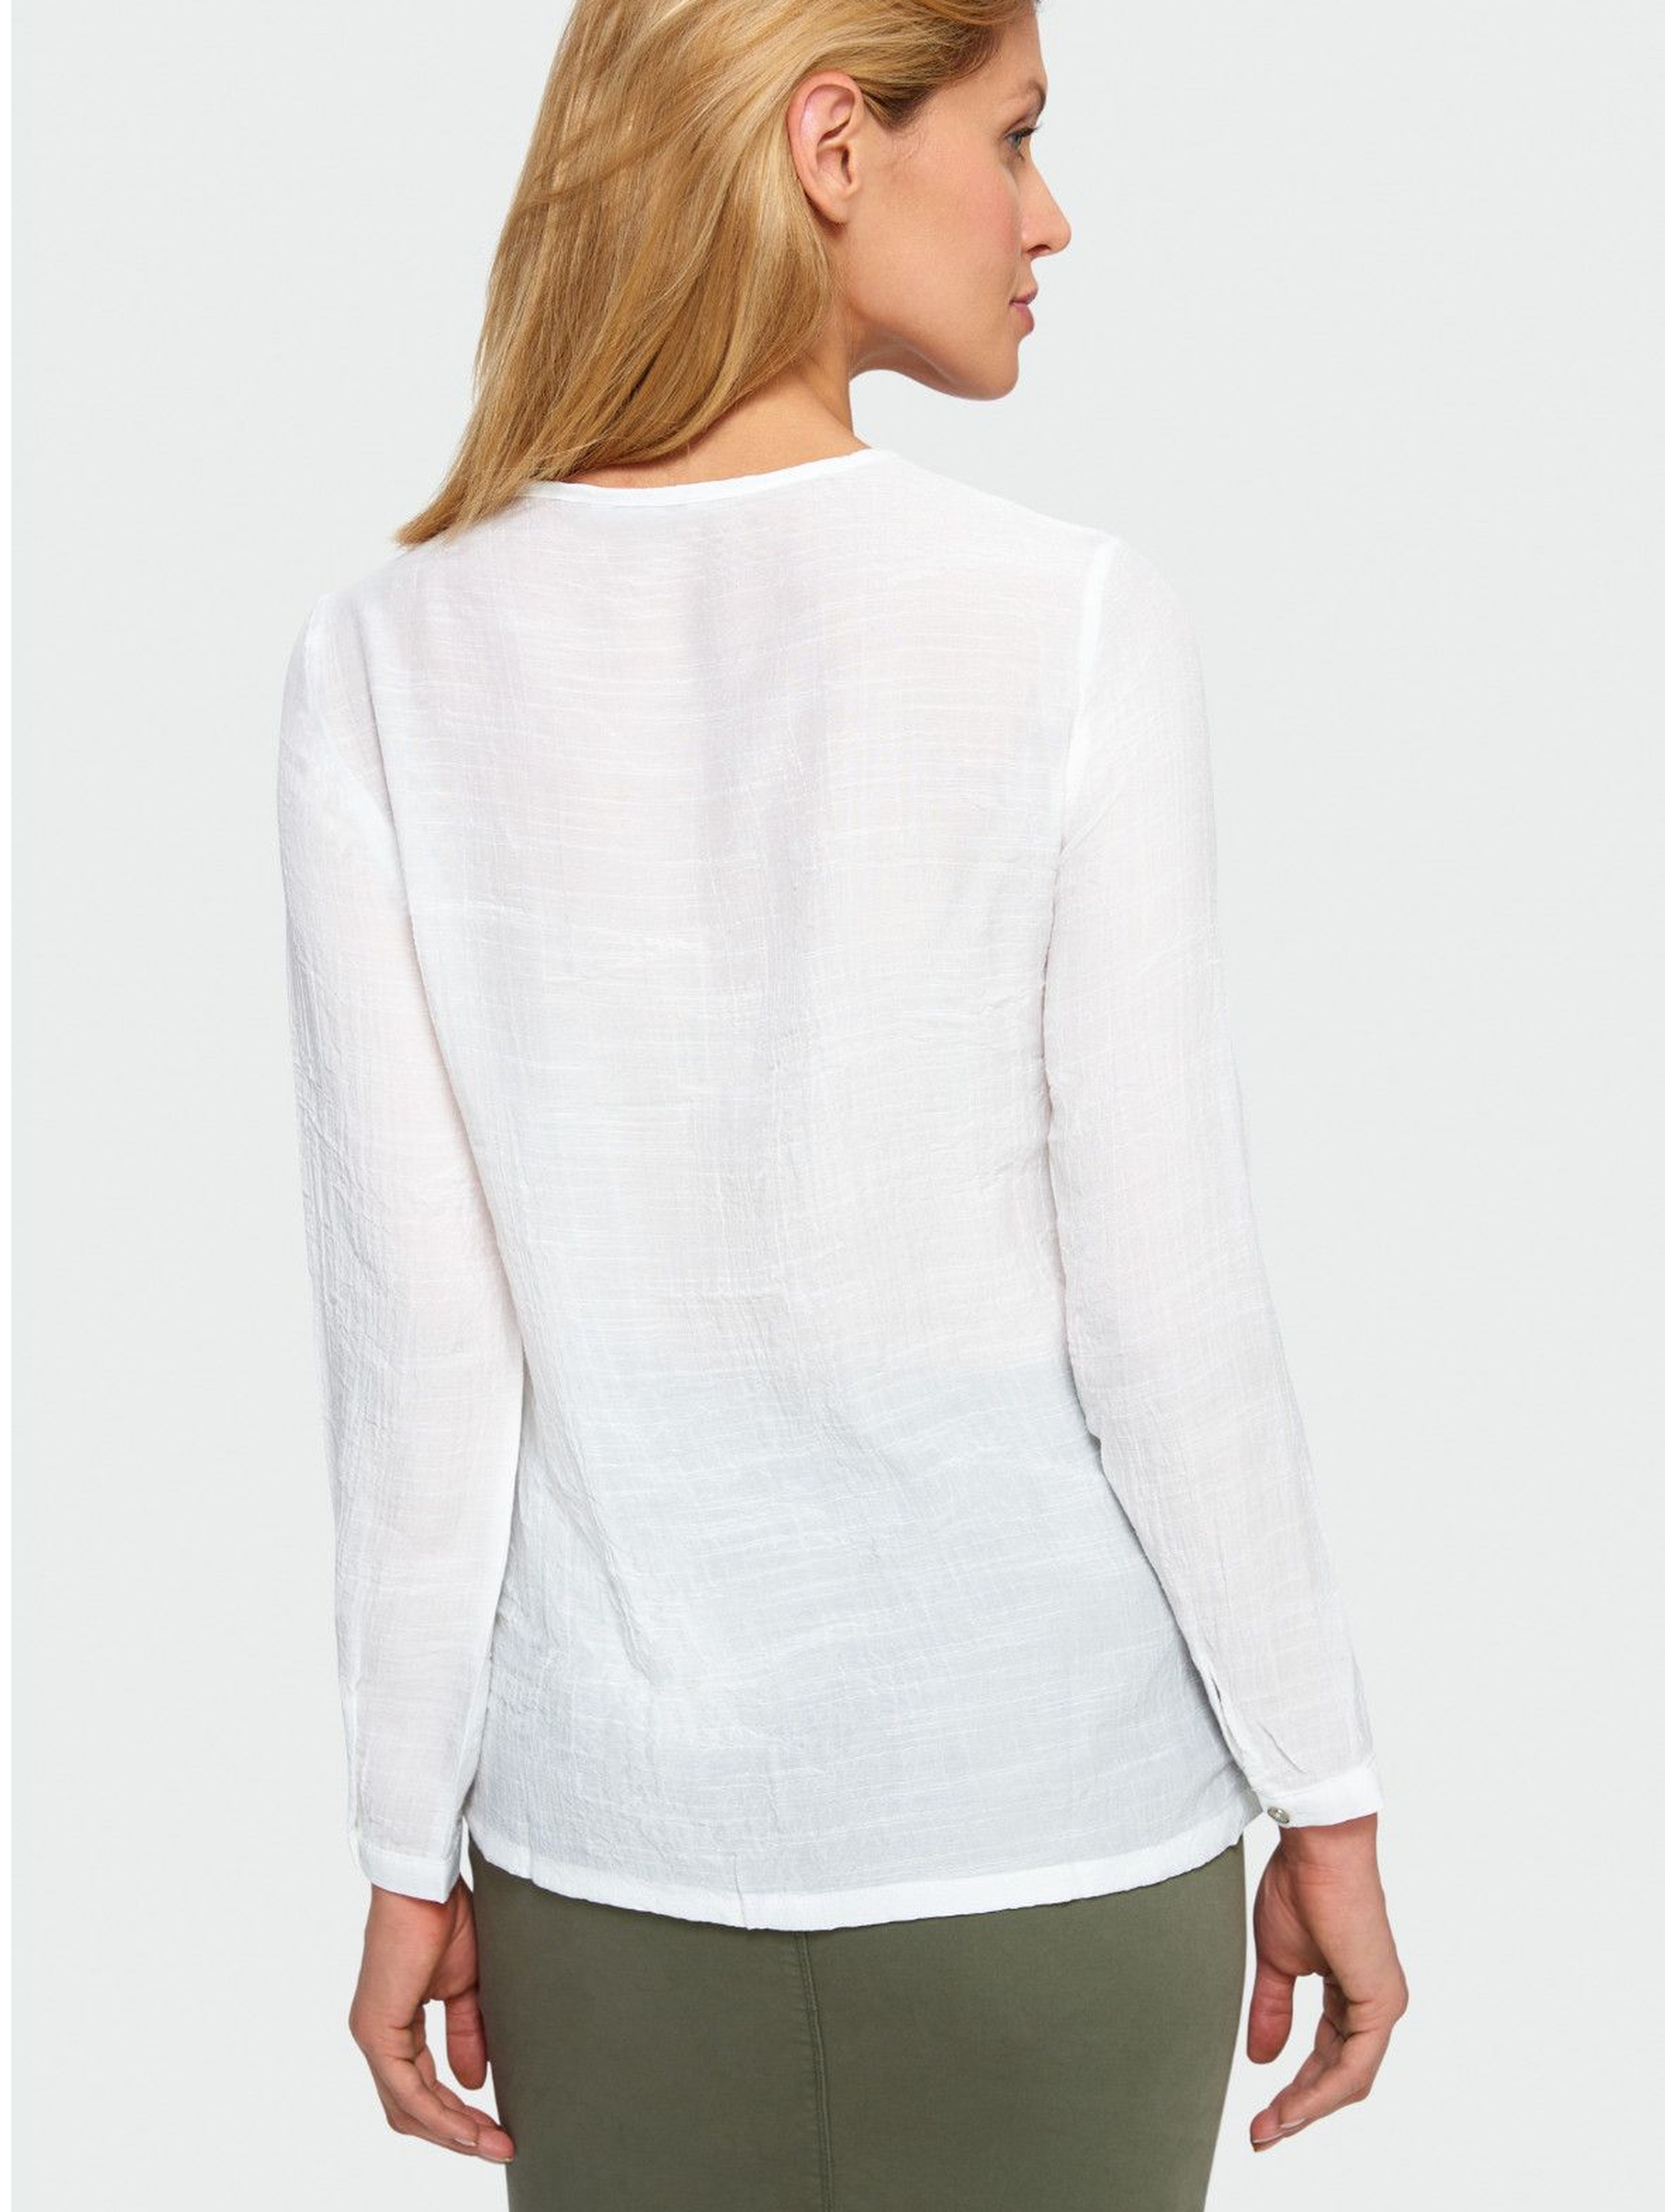 Elegancka bluzka, rozpinana - biała z koronkową górą